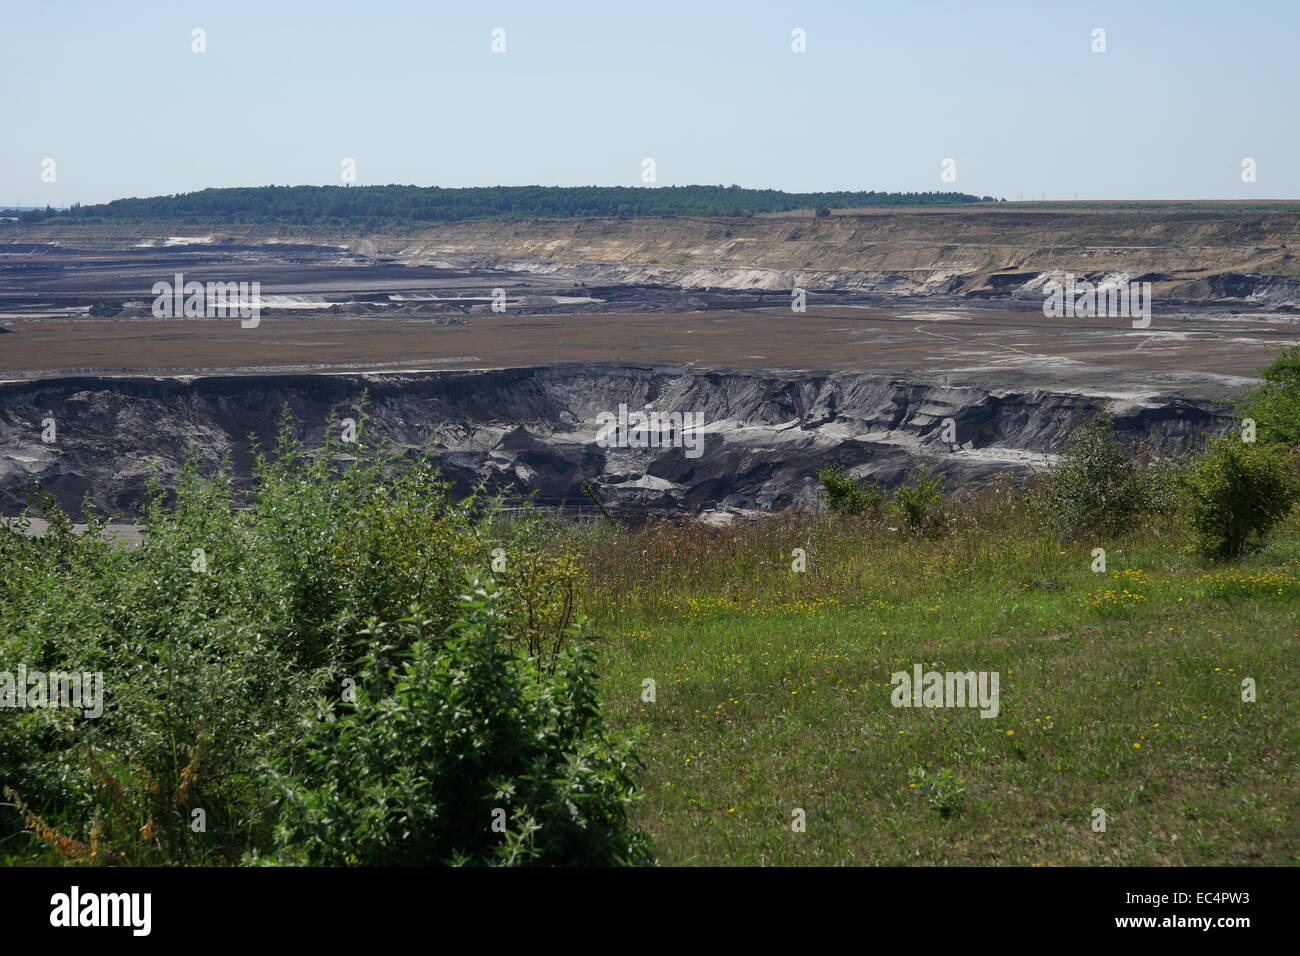 Lignite mine in central Germany Stock Photo